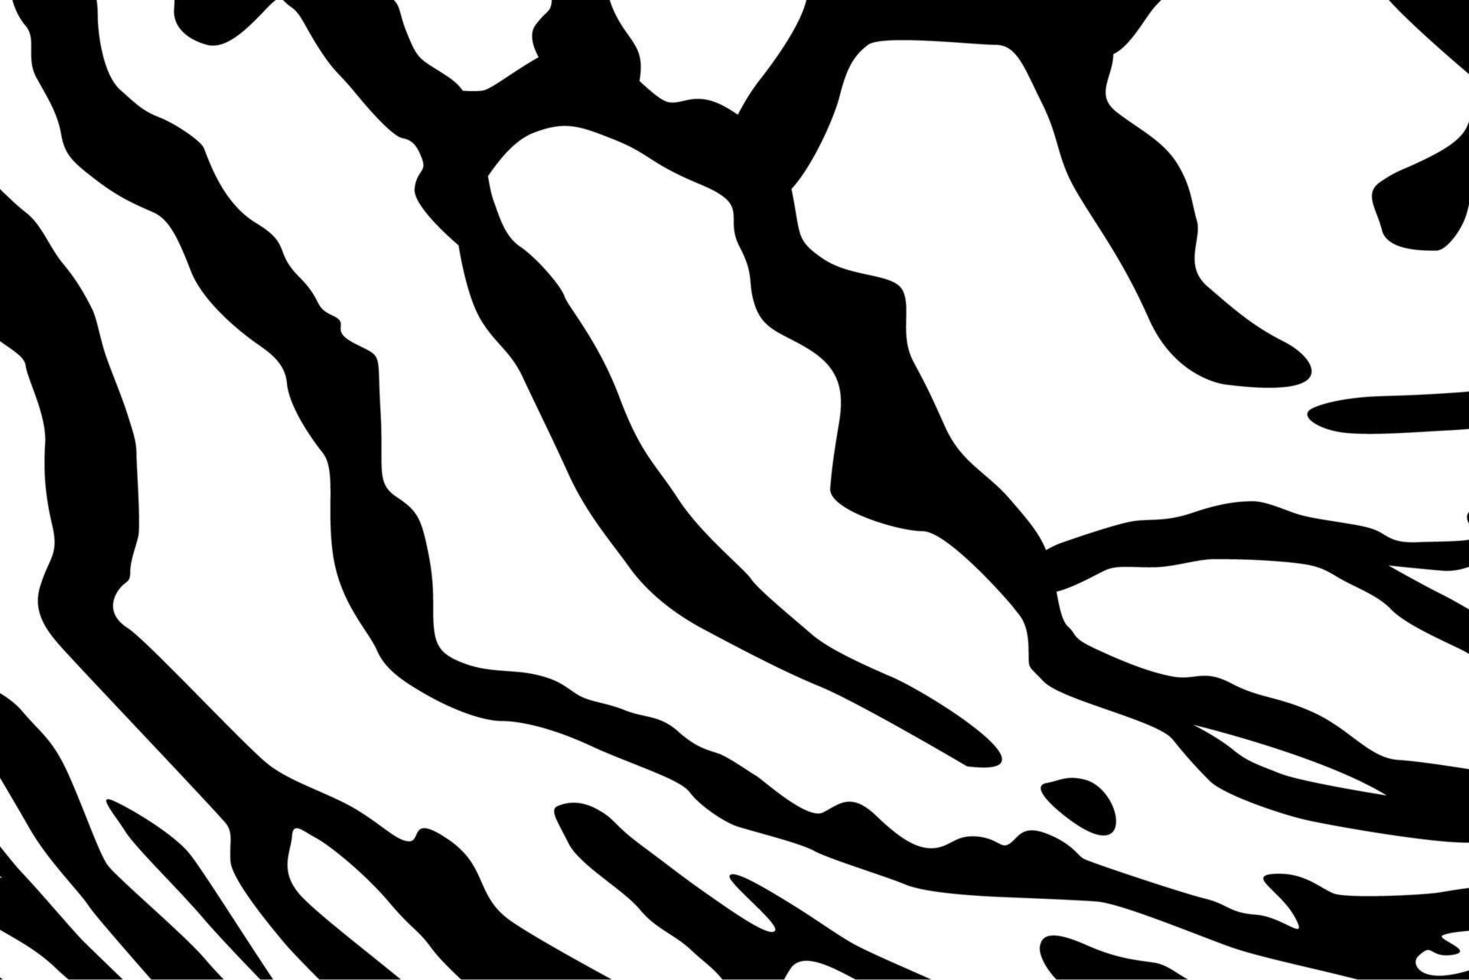 artistiek motieven patroon geïnspireerd door symphysodon of discus vis, voor decoratie, overladen, achtergrond, website, behang, mode, interieur, omslag, dier afdrukken, of grafisch ontwerp element vector